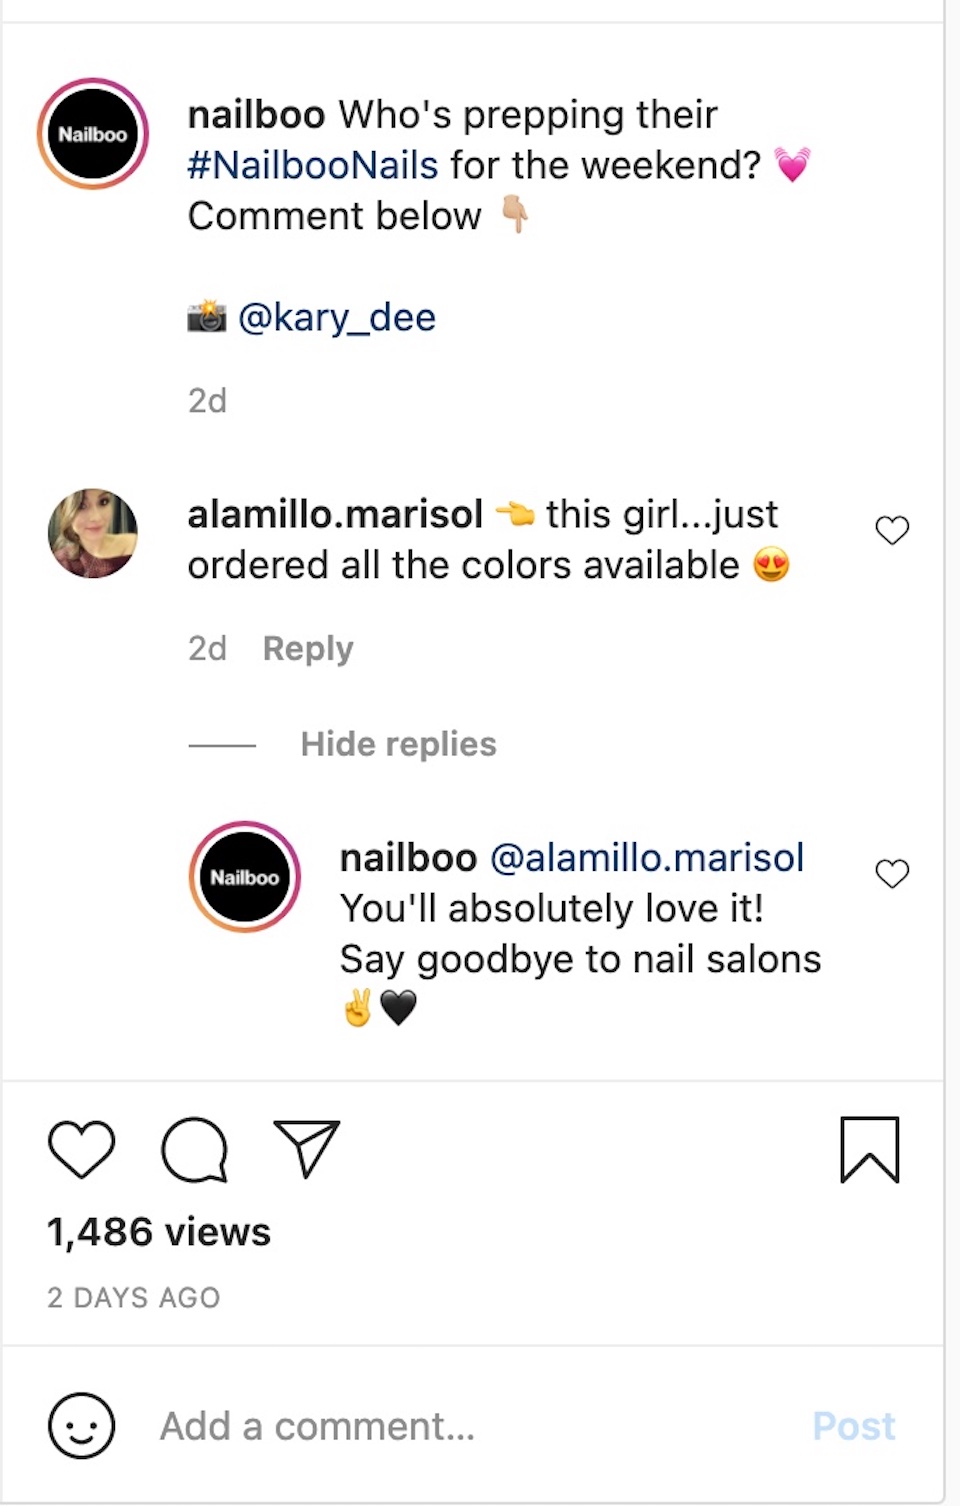 Compania de produse pentru unghii Nailboo este reprezentată interacționând cu un comentator la o postare de pe contul său de Instagram.